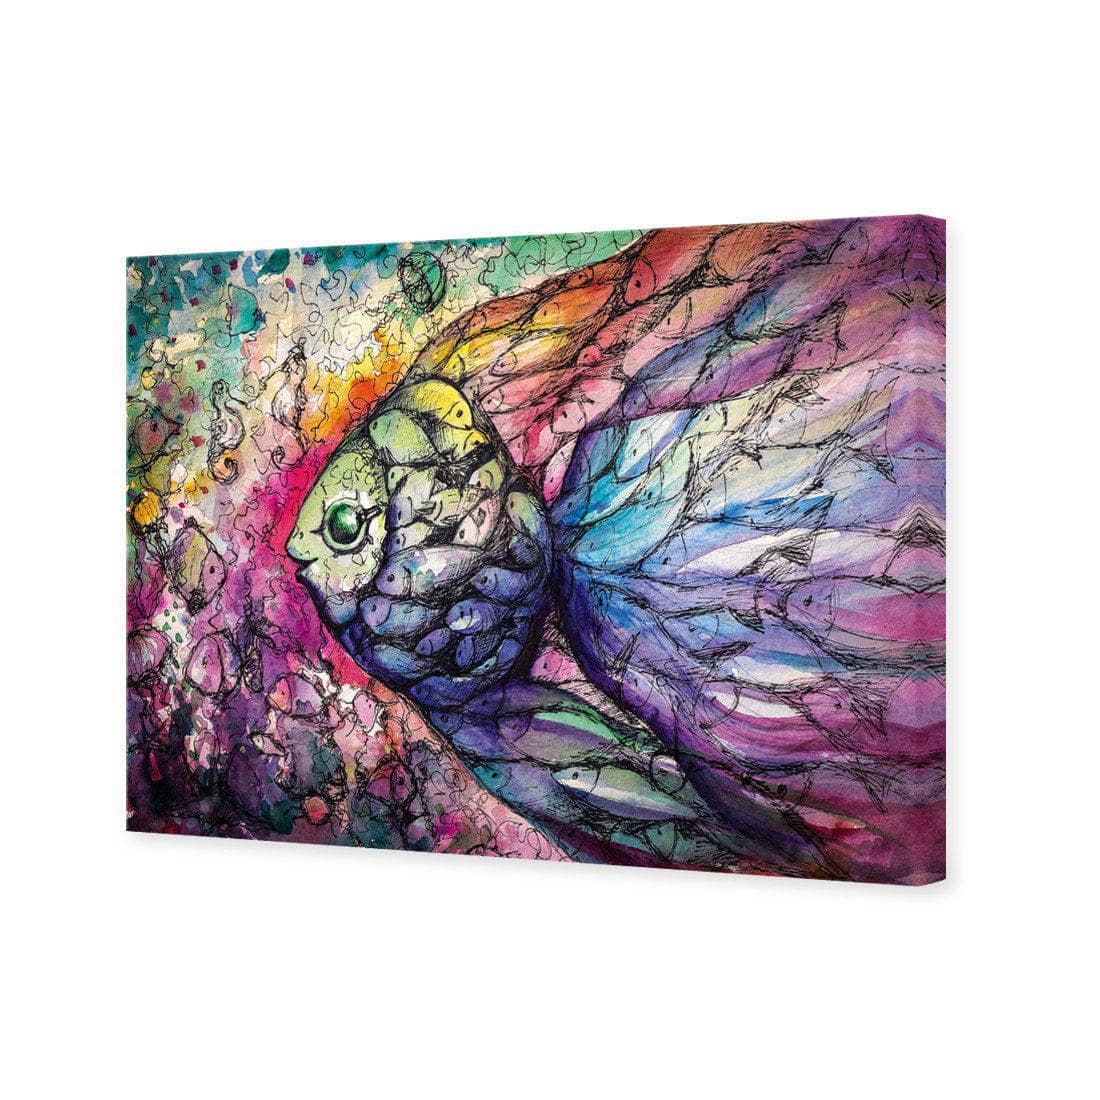 Scribblefish Canvas Art-Canvas-Wall Art Designs-45x30cm-Canvas - No Frame-Wall Art Designs